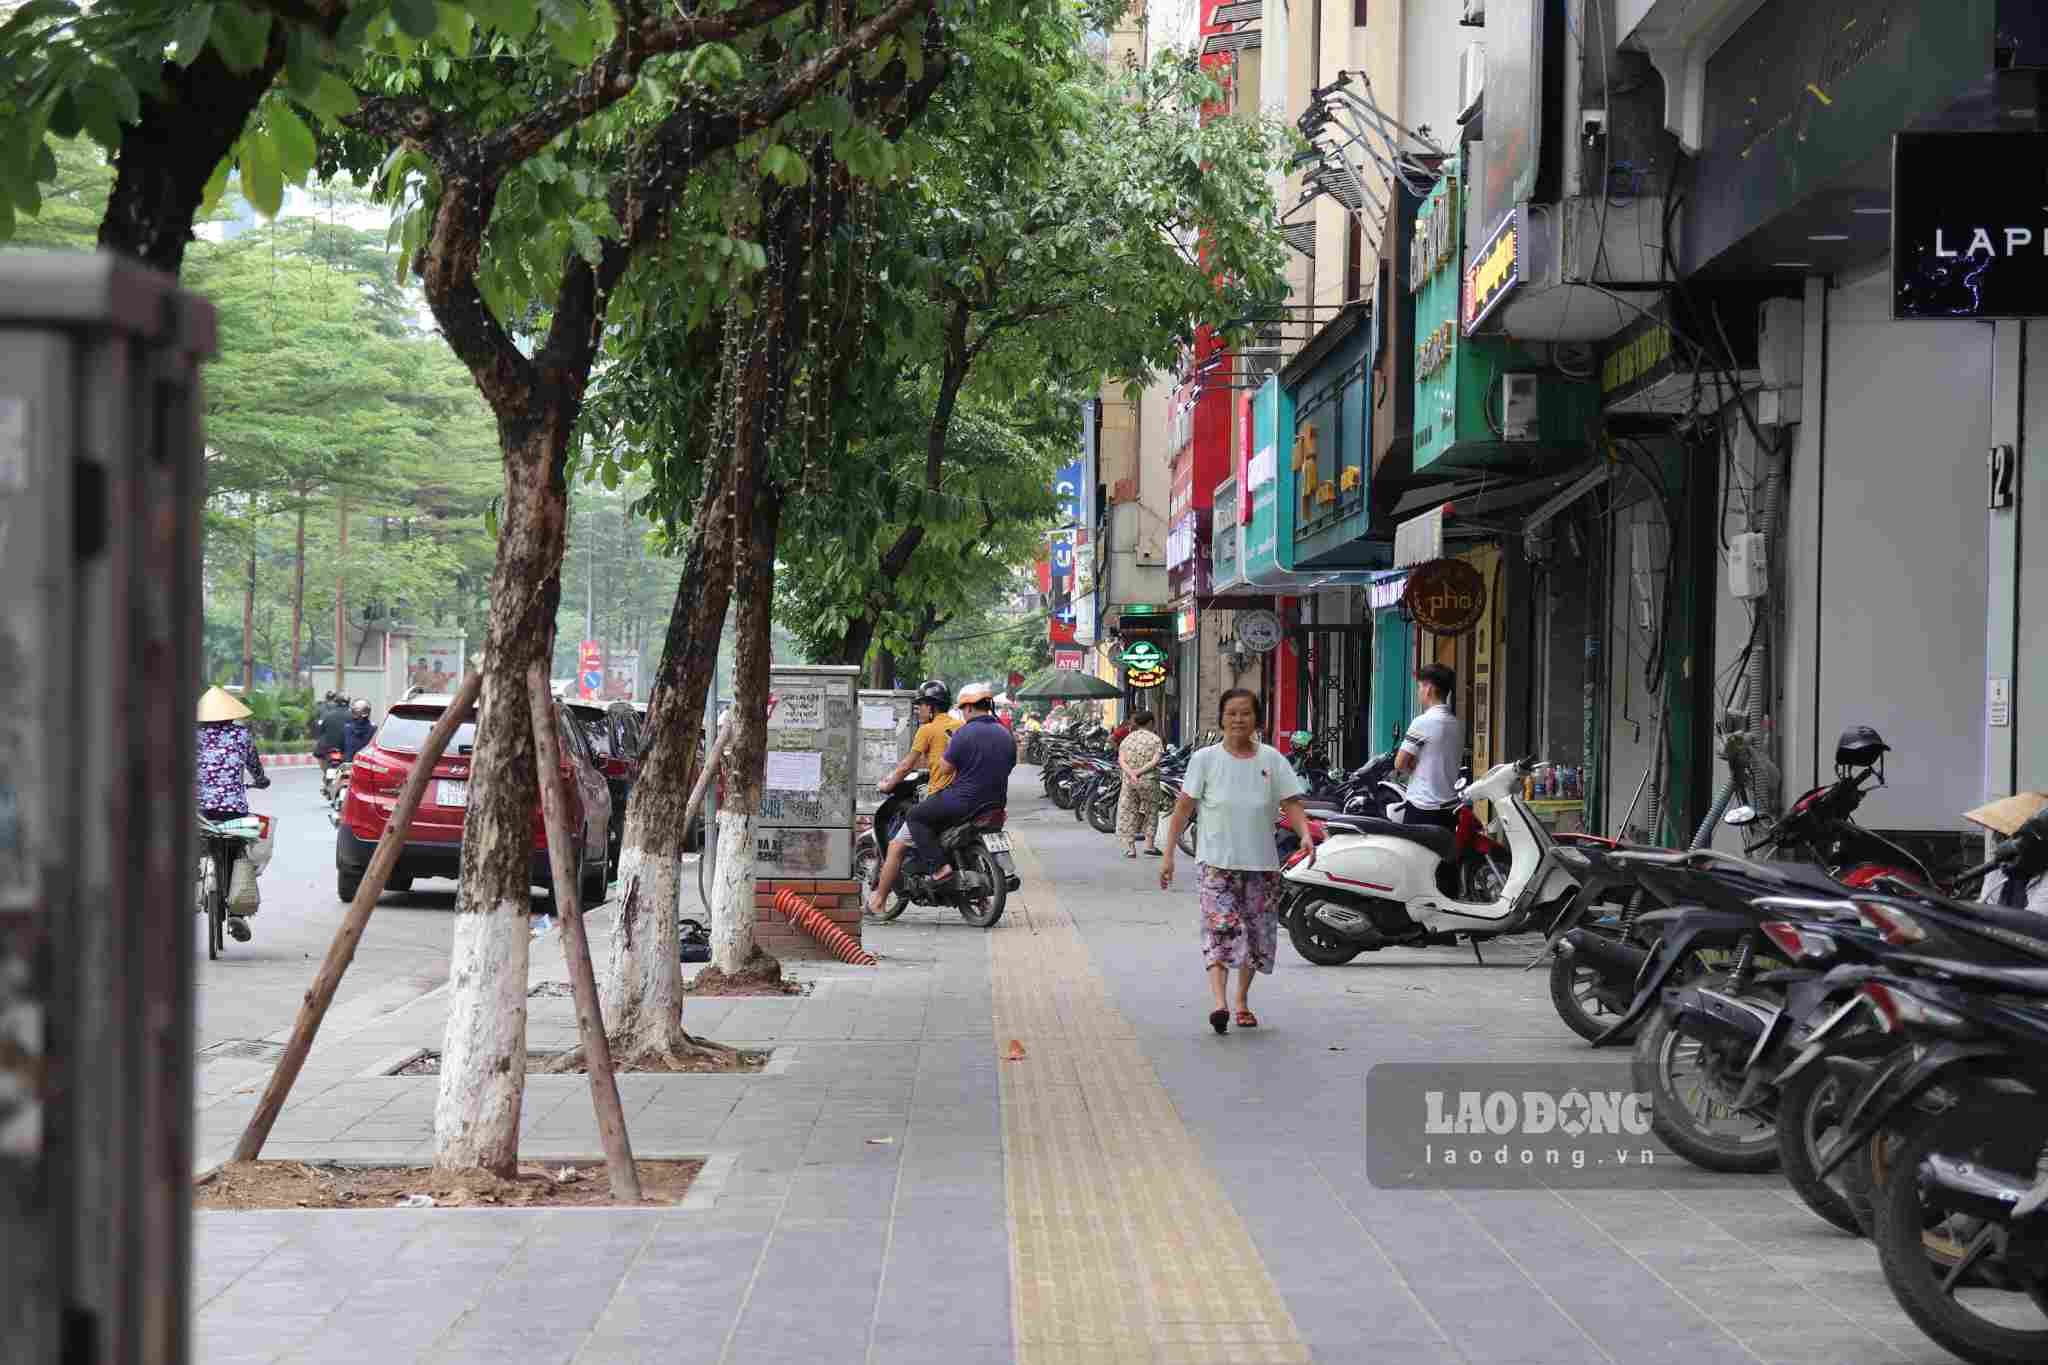   Phố Trần Thái Tông (Cầu Giấy, Hà Nội) có độ dài khoảng 1km. Đây là tuyến phố thường xuyên có nhiều phương tiện qua lại, đông dân cư và nhiều cửa hàng kinh doanh, buôn bán.